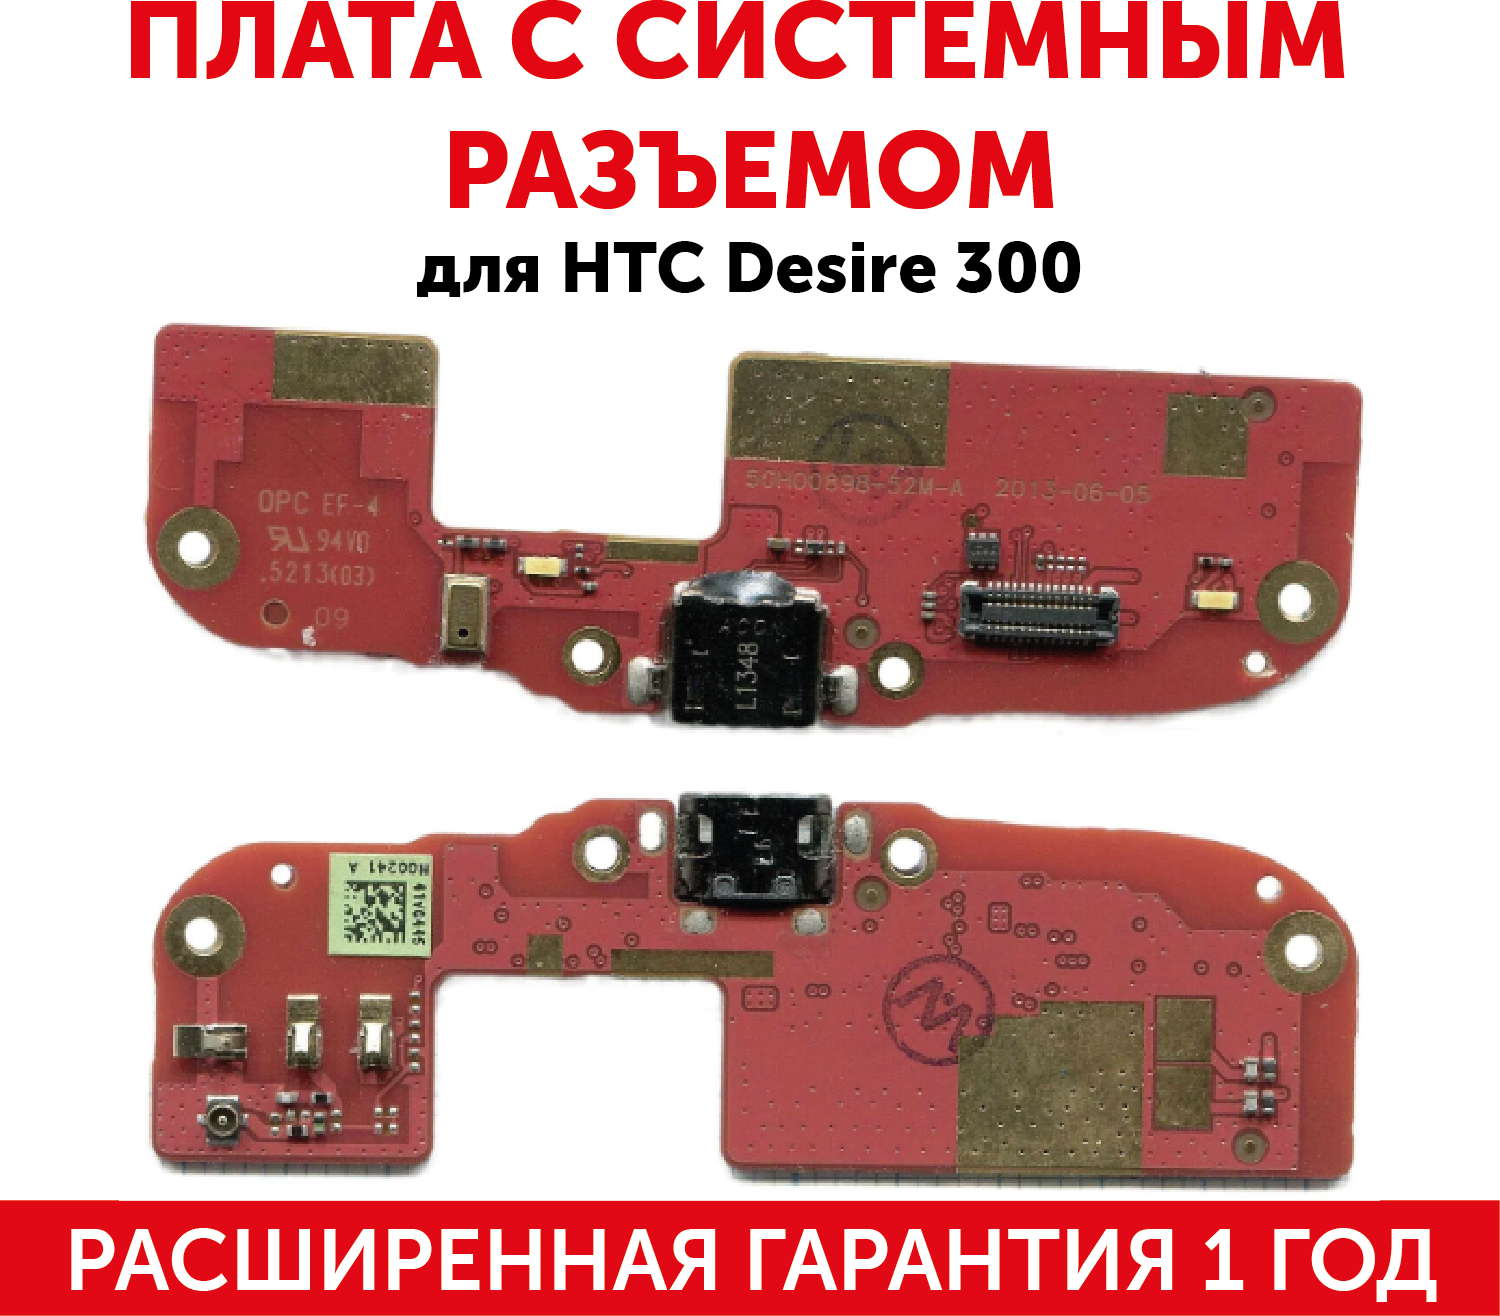 Разъем (гнездо зарядки) MicroUSB для мобильного телефона (смартфона) HTC Desire 300 (плата с системным разъемом)